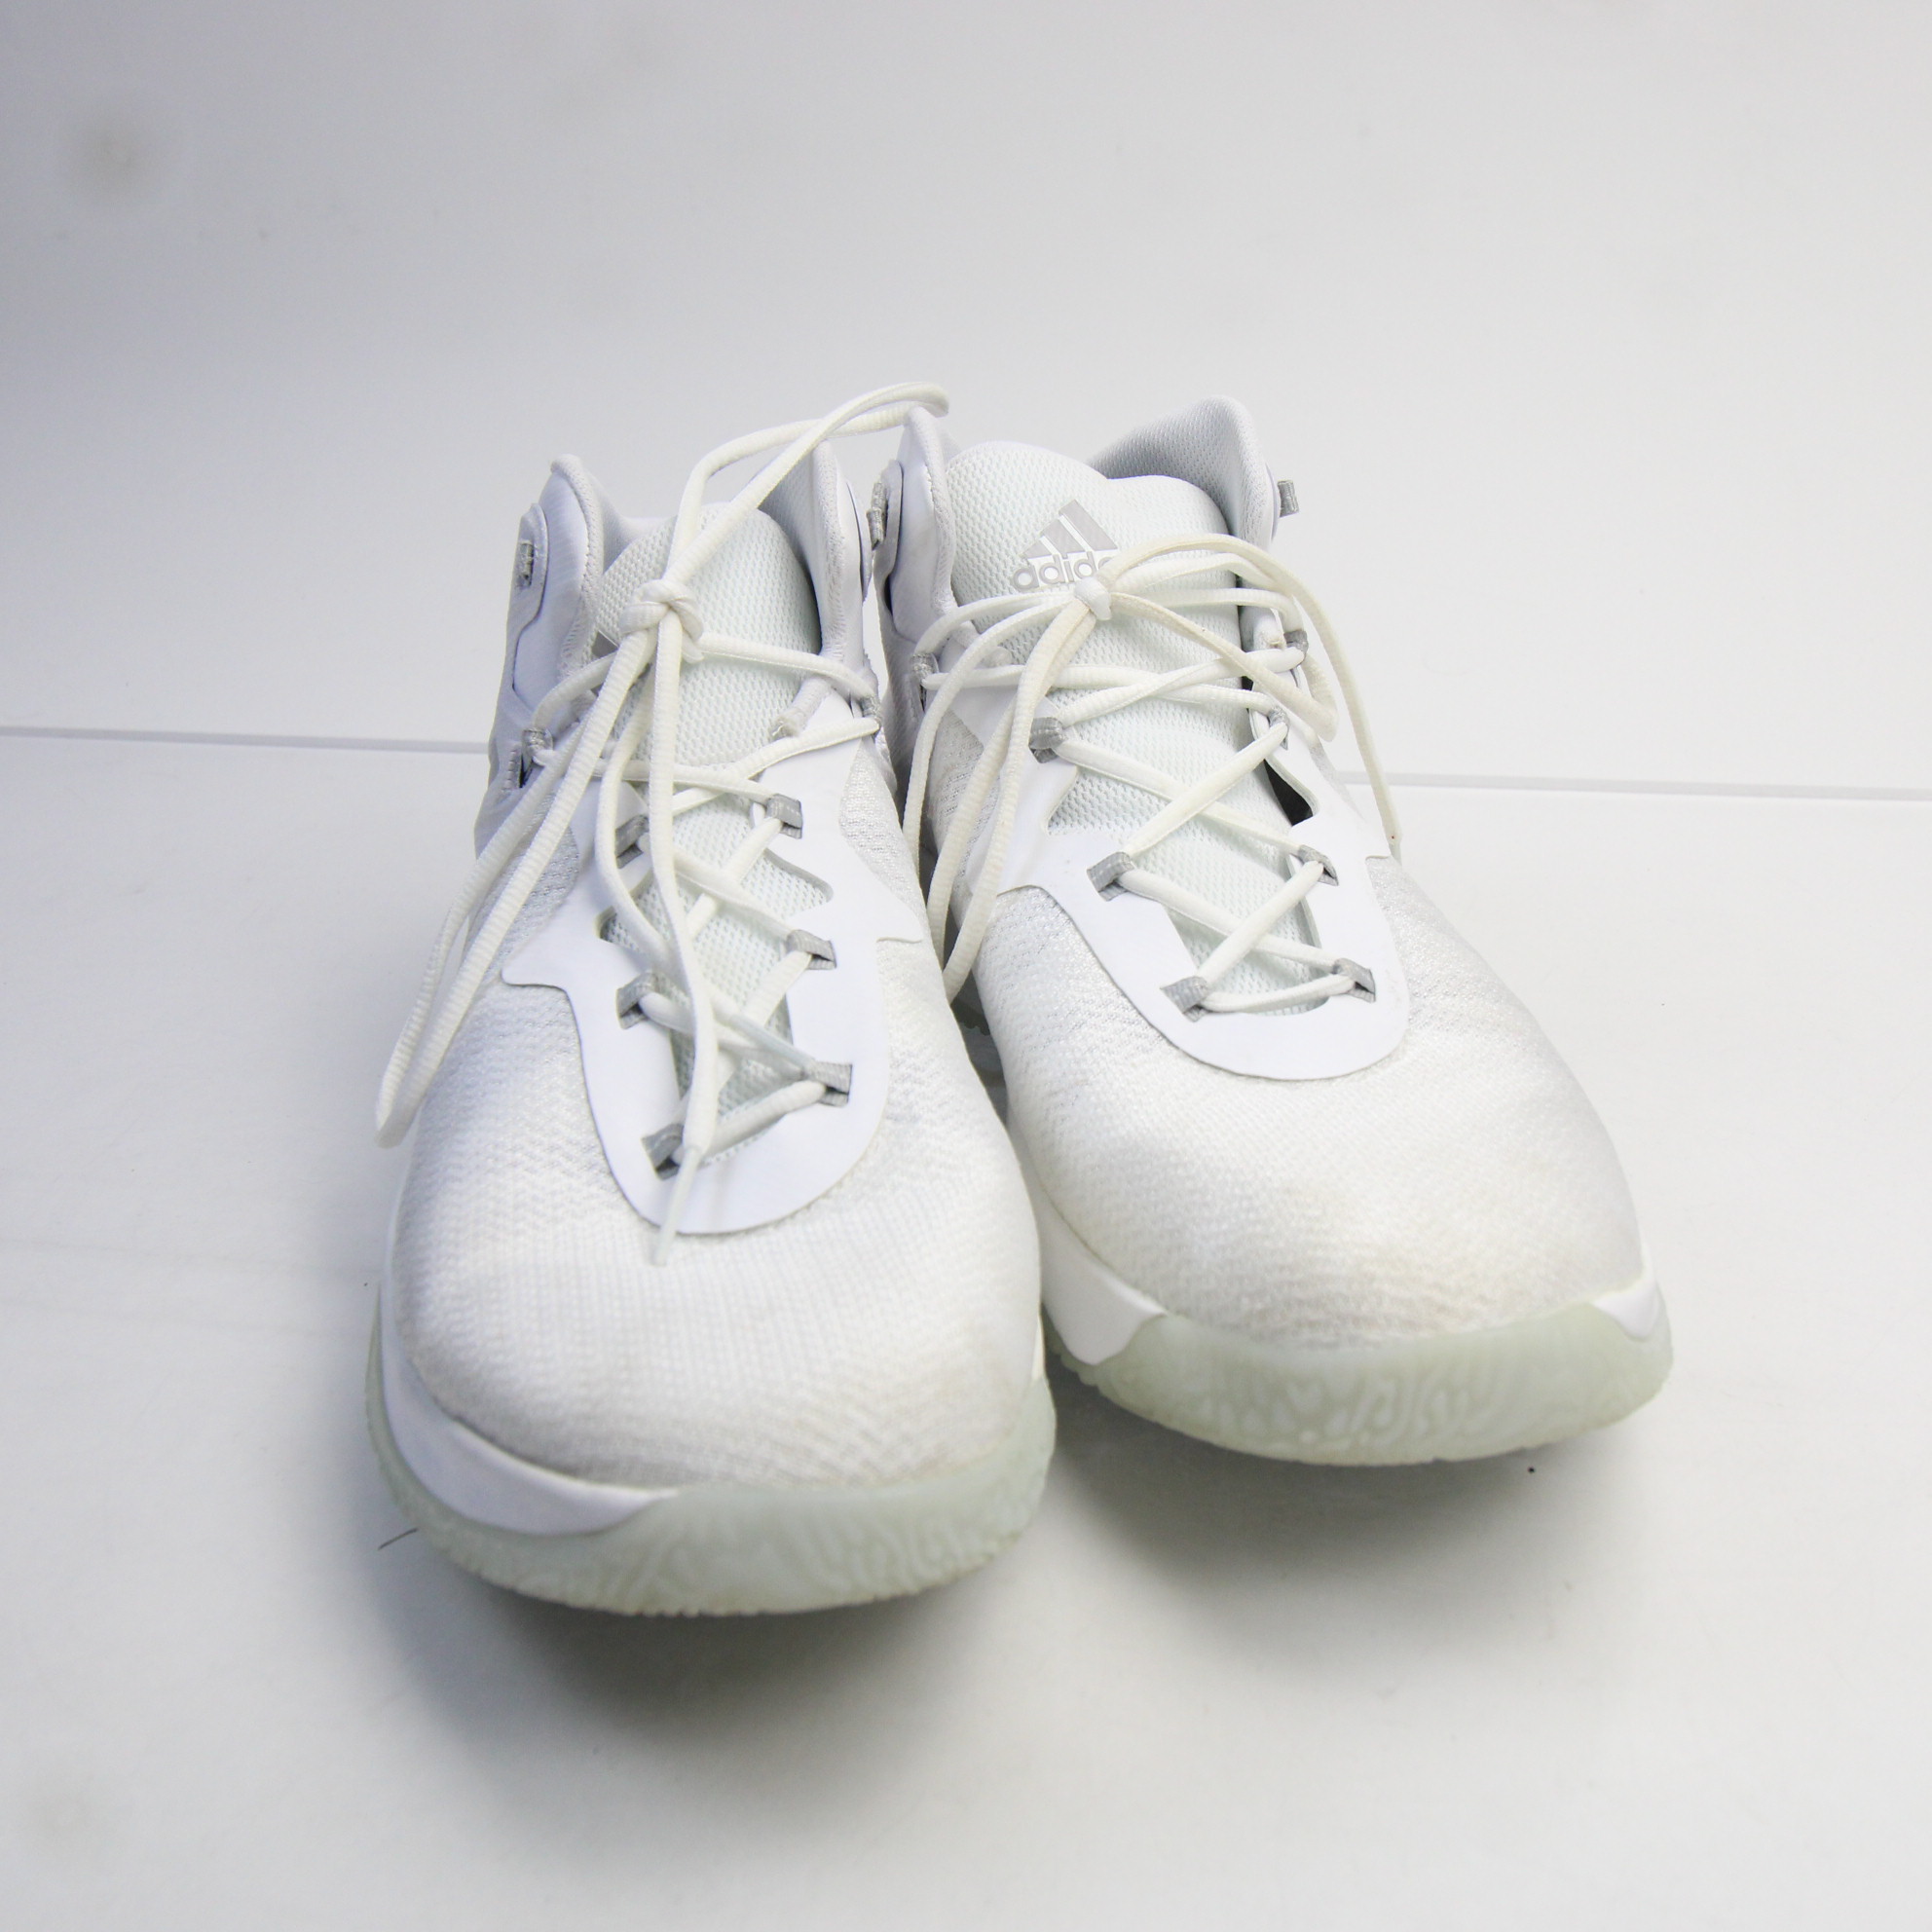 adidas Basketball Shoe Men's White Used | eBay